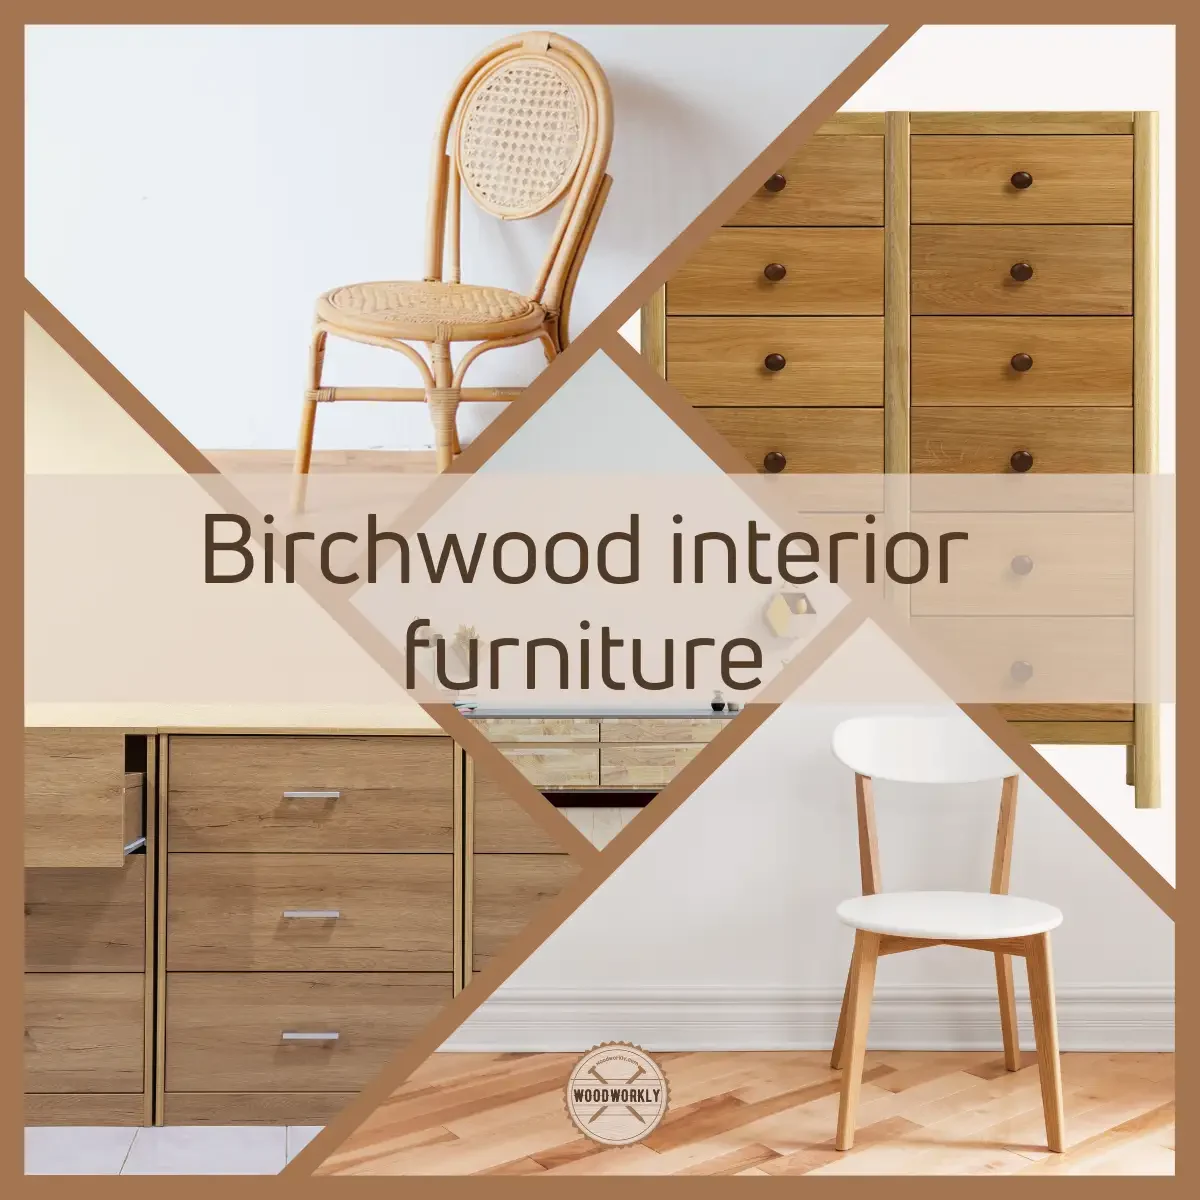 Birchwood interior furniture